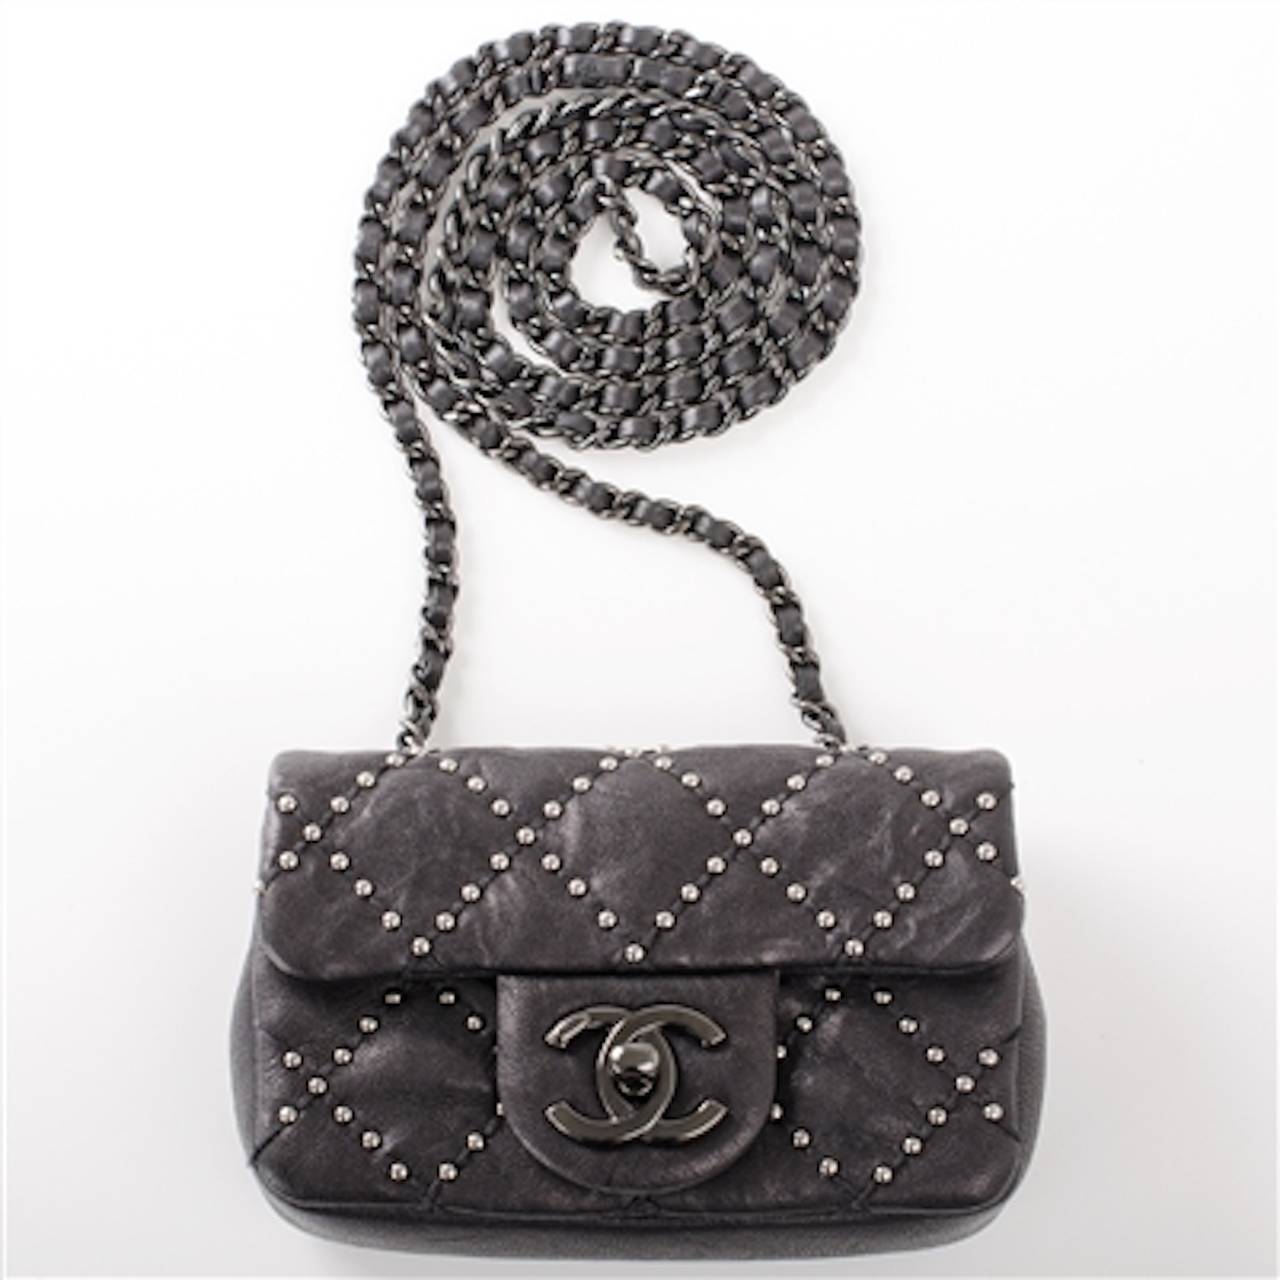 Chanel Black Lambskin Mini Studded Flap Bag 1